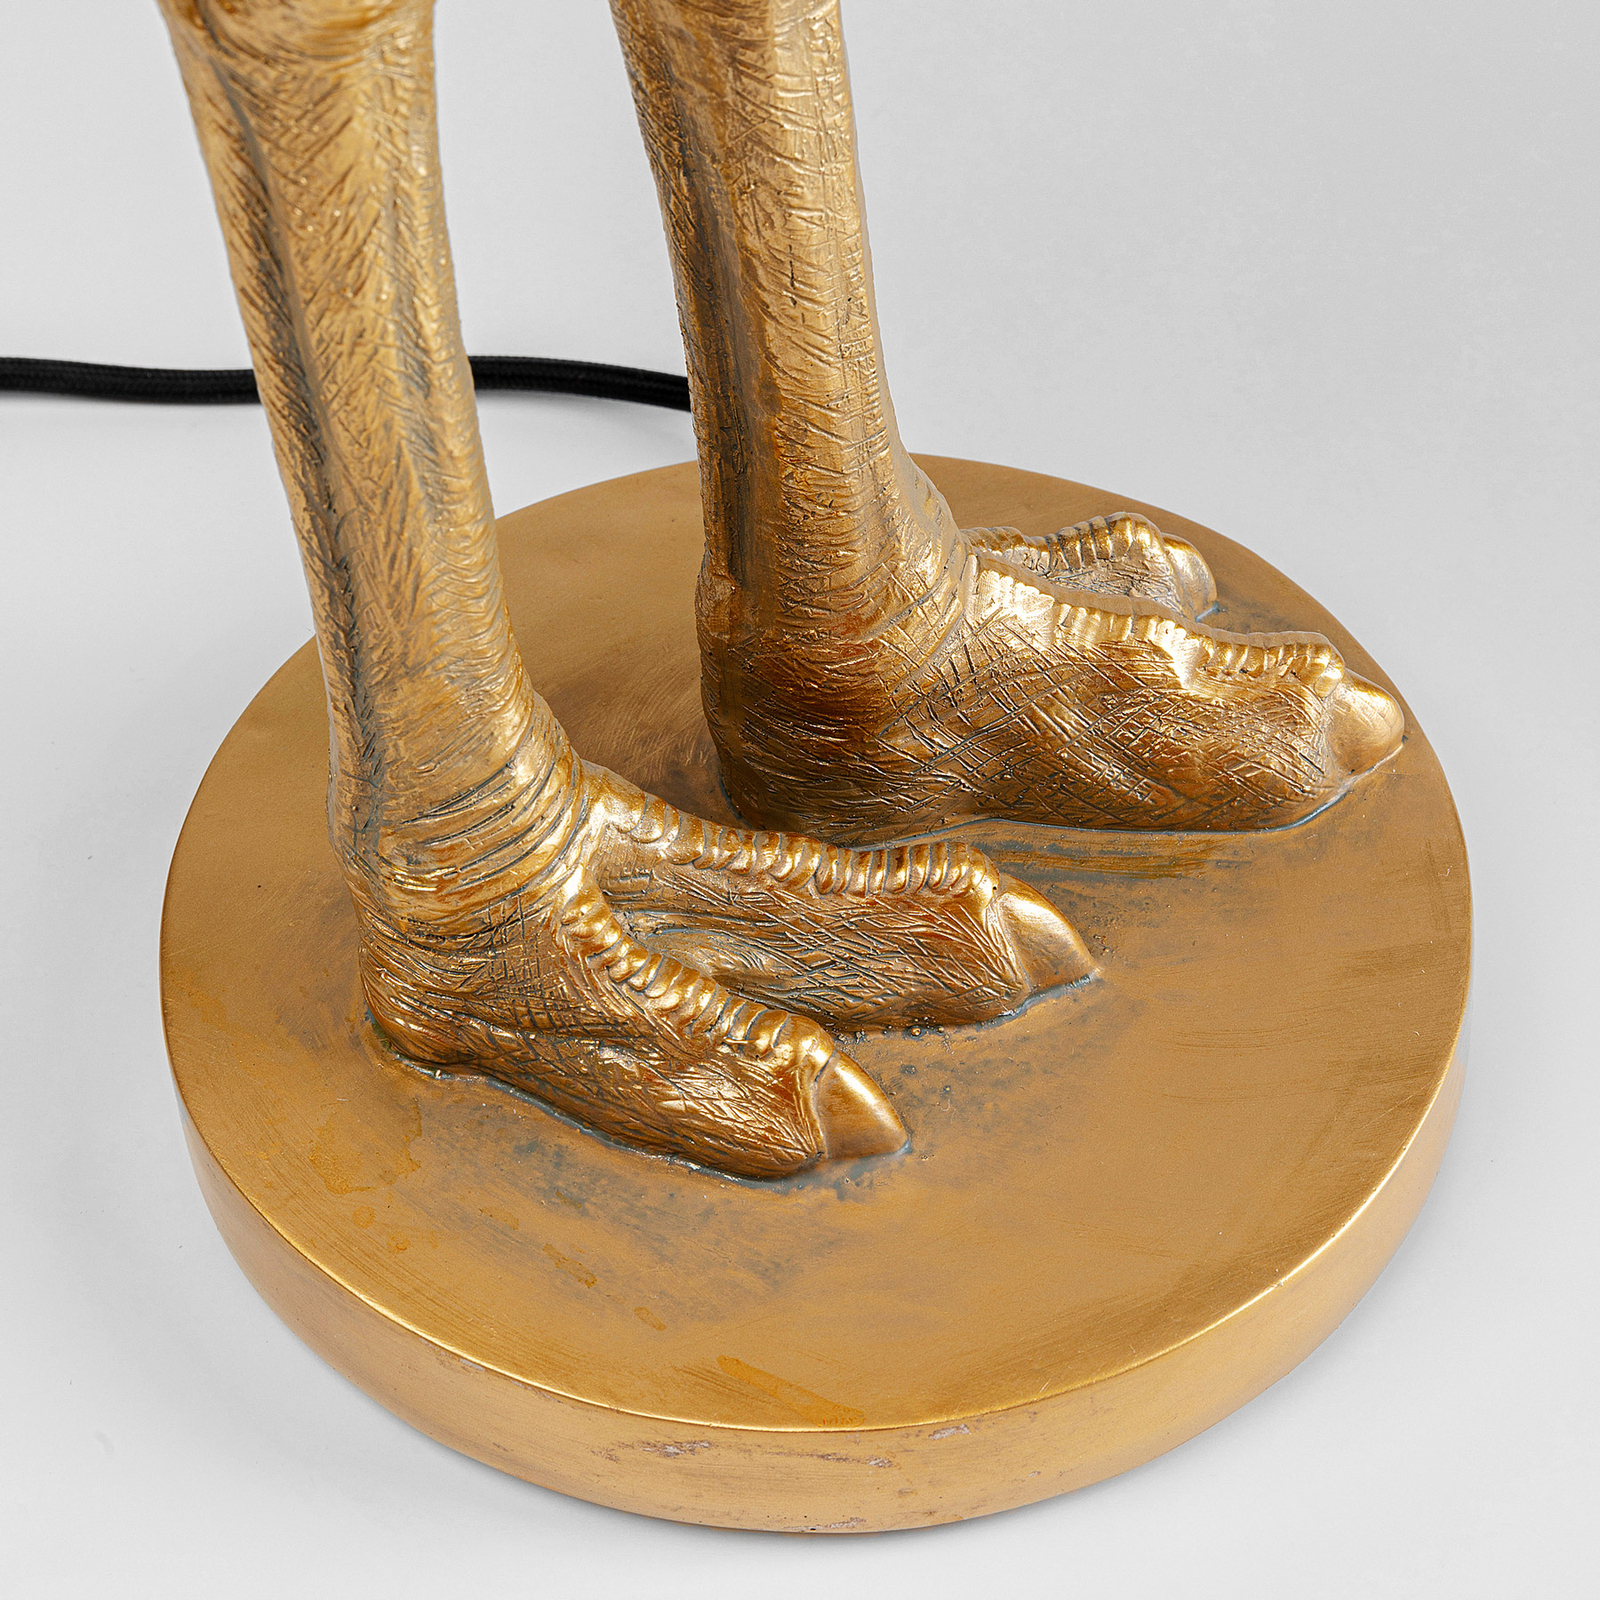 Lampa stołowa KARE Animal Ostrich z figurką strusia